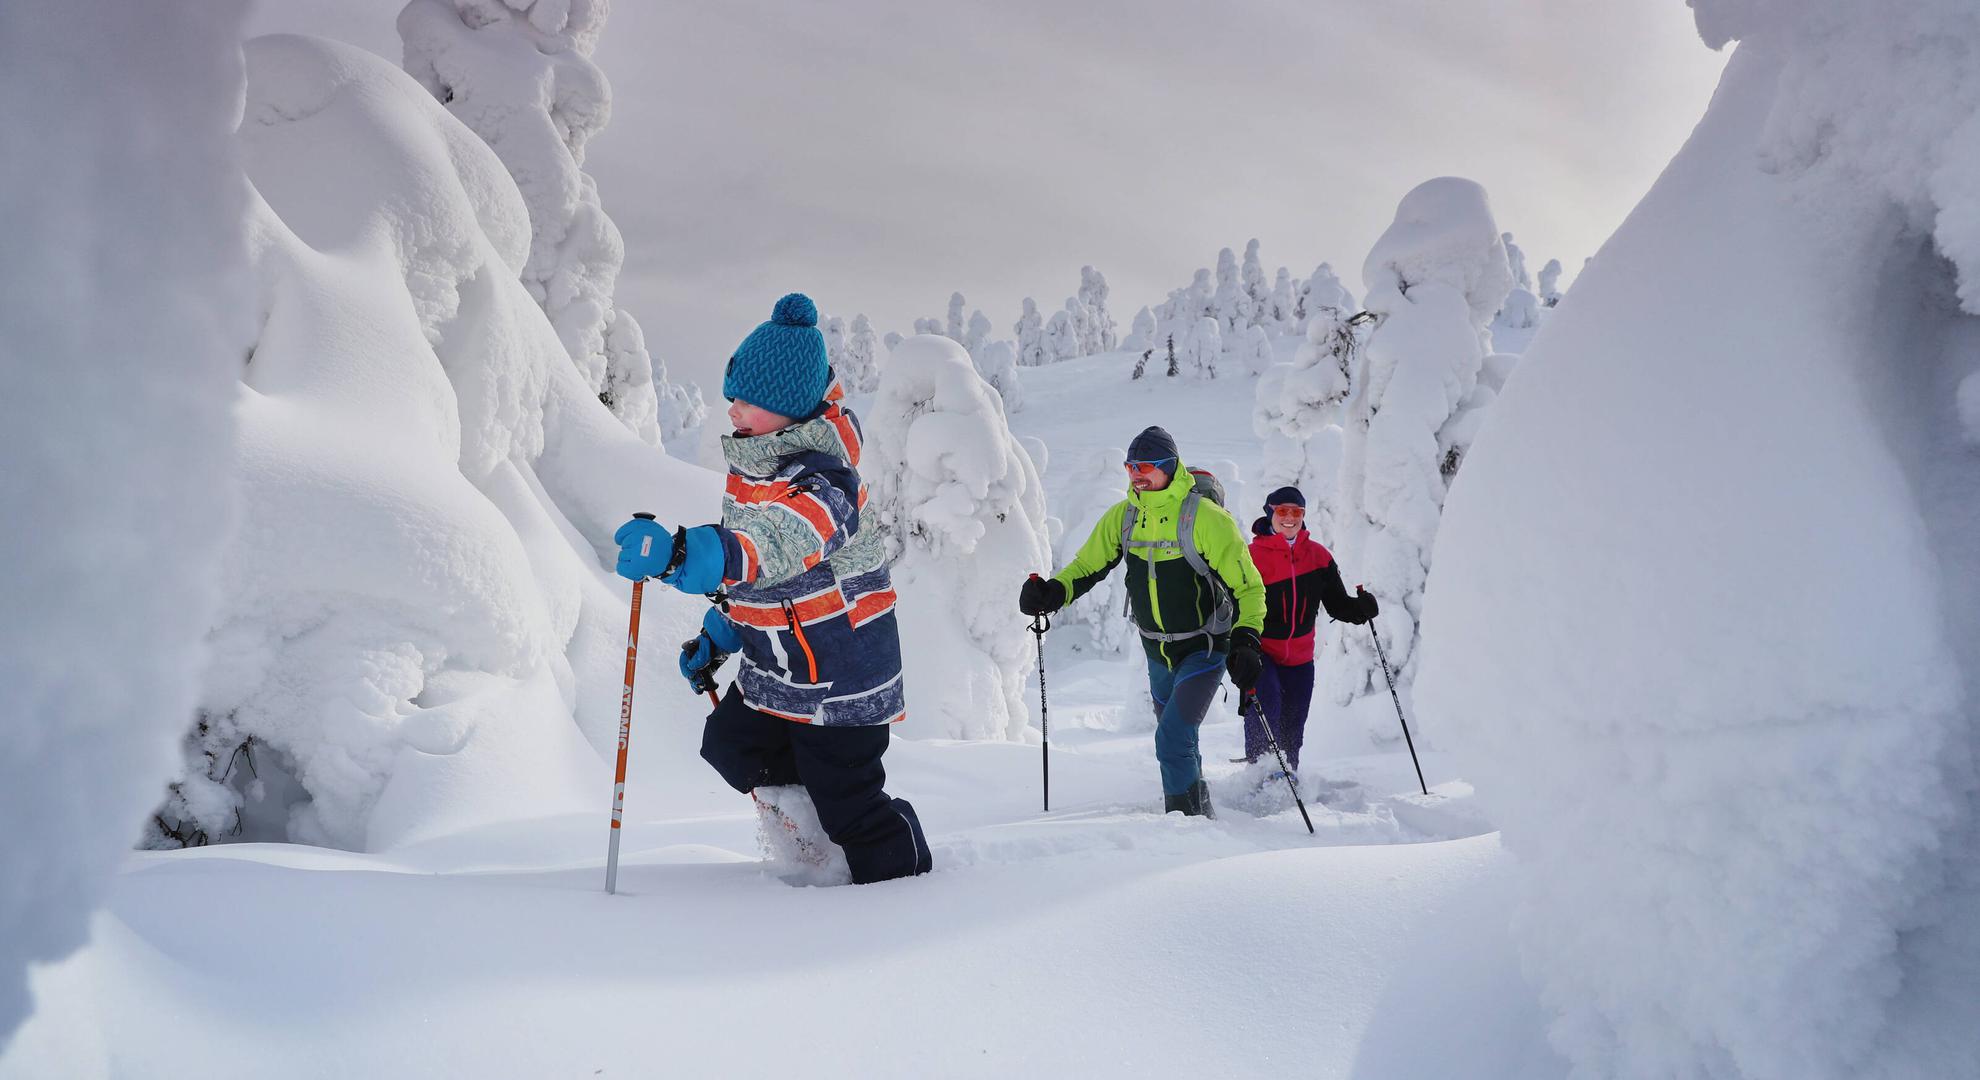 En Finlandia uno de los factores que los convierte por séptimo año consecutivo en el país más feliz del mundo es el contacto con la naturaleza.